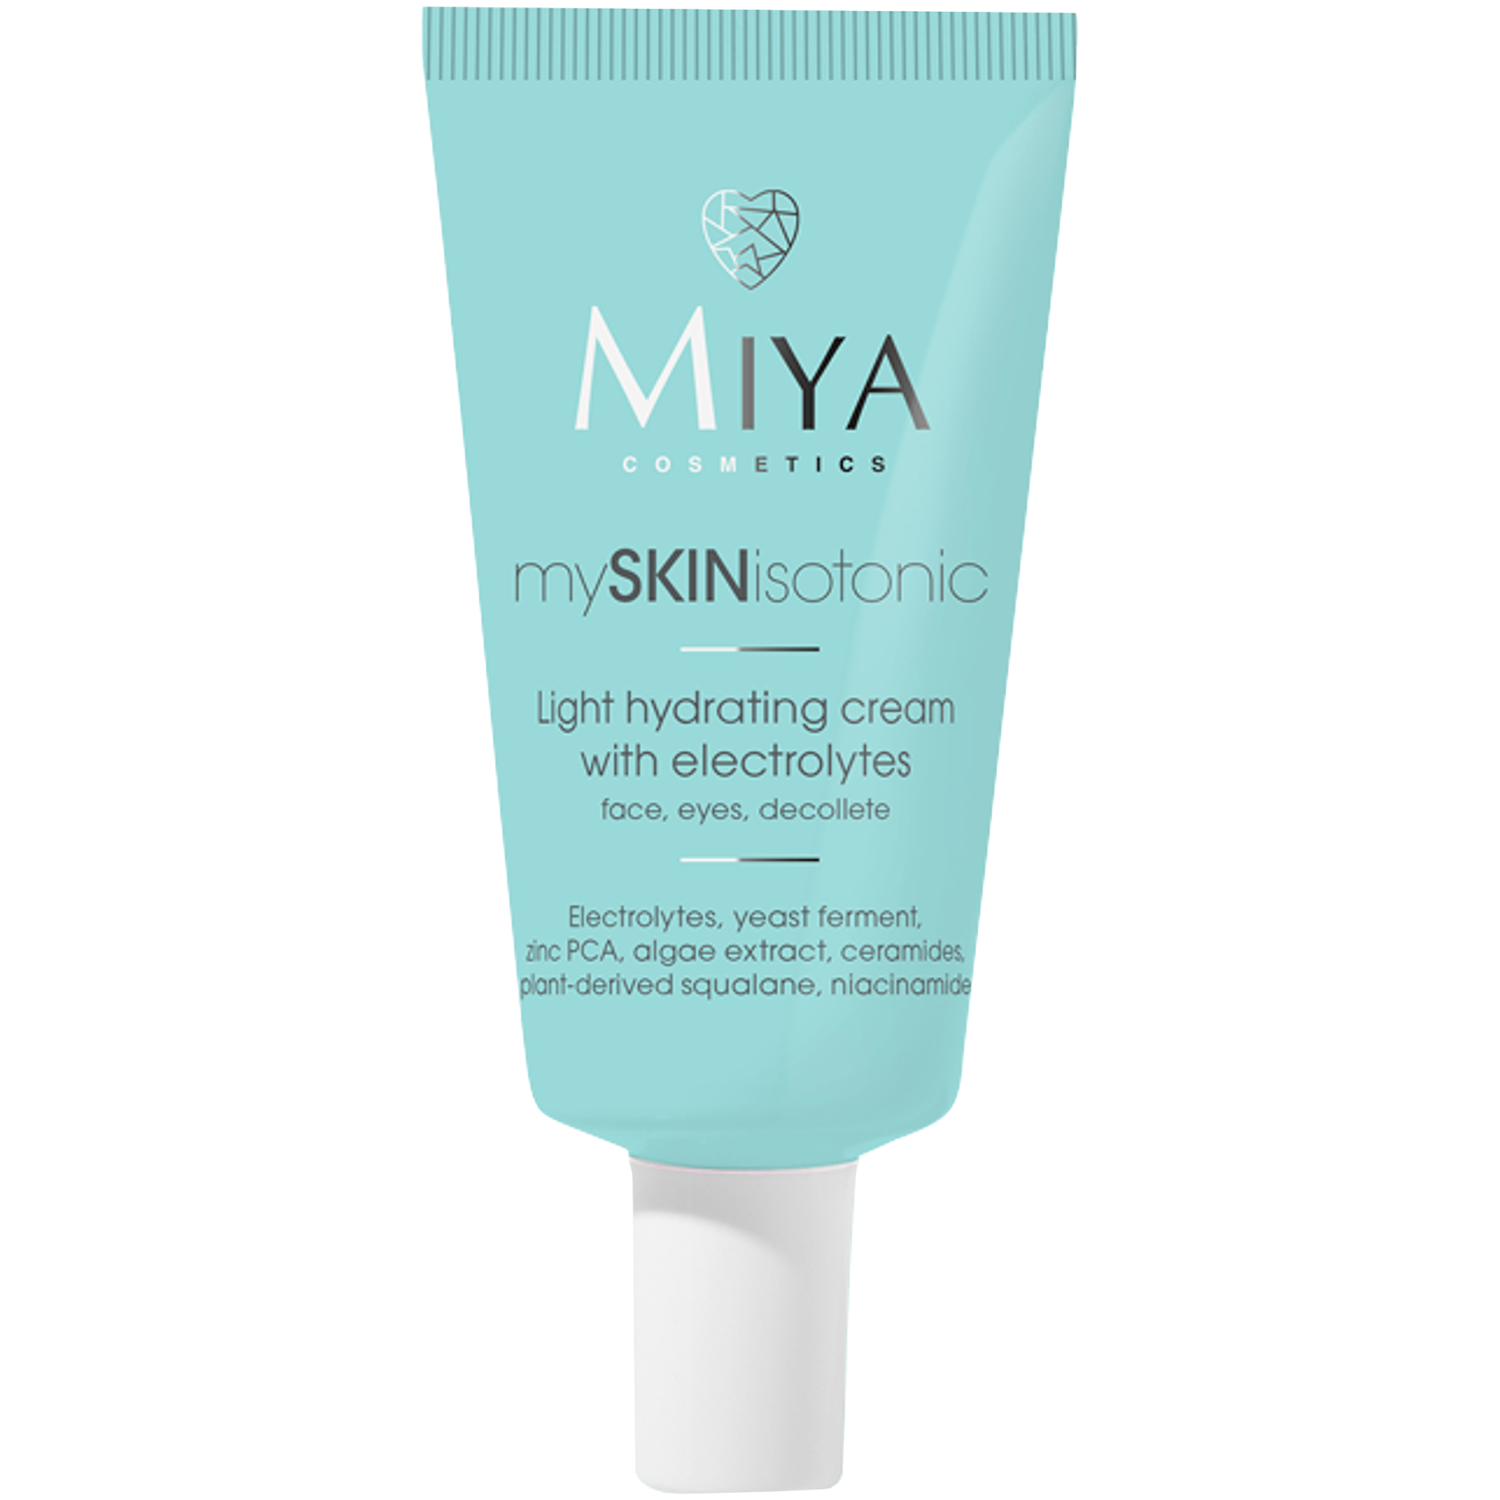 Легкий увлажняющий крем с электролитами для лица Miya Cosmetics Myskinisotonic, 40 мл набор кремов для лица век и шеи ежедневный уход